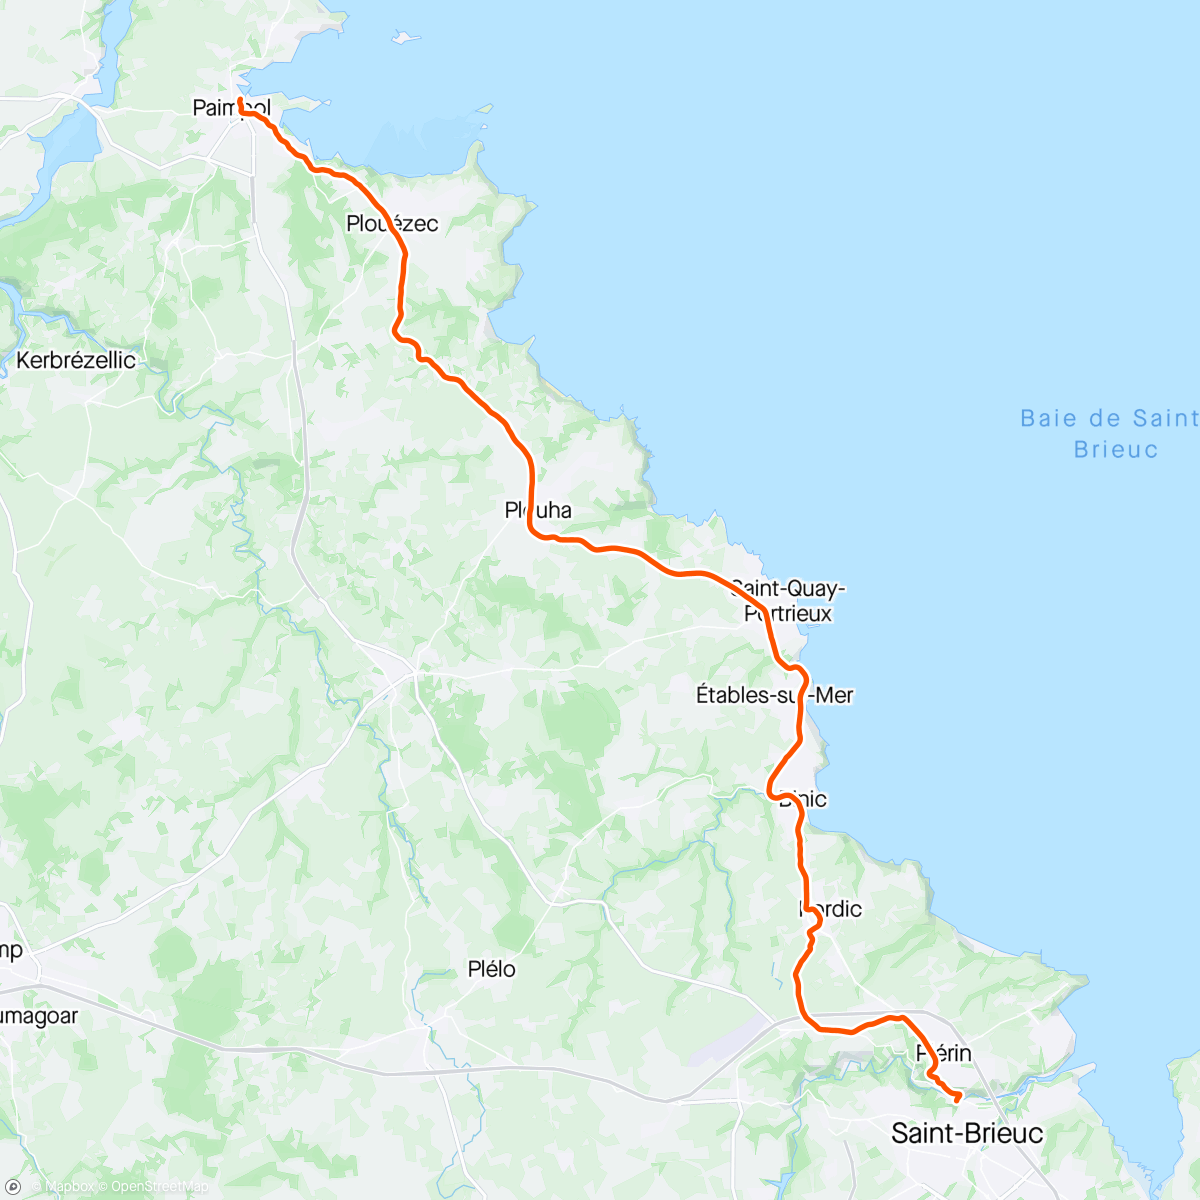 Carte de l'activité Kinomap - 🚴🏼‍♂️ Stage 2 Tour de France 2021 😍 tronçon Paimpol - Saint-Brieuc